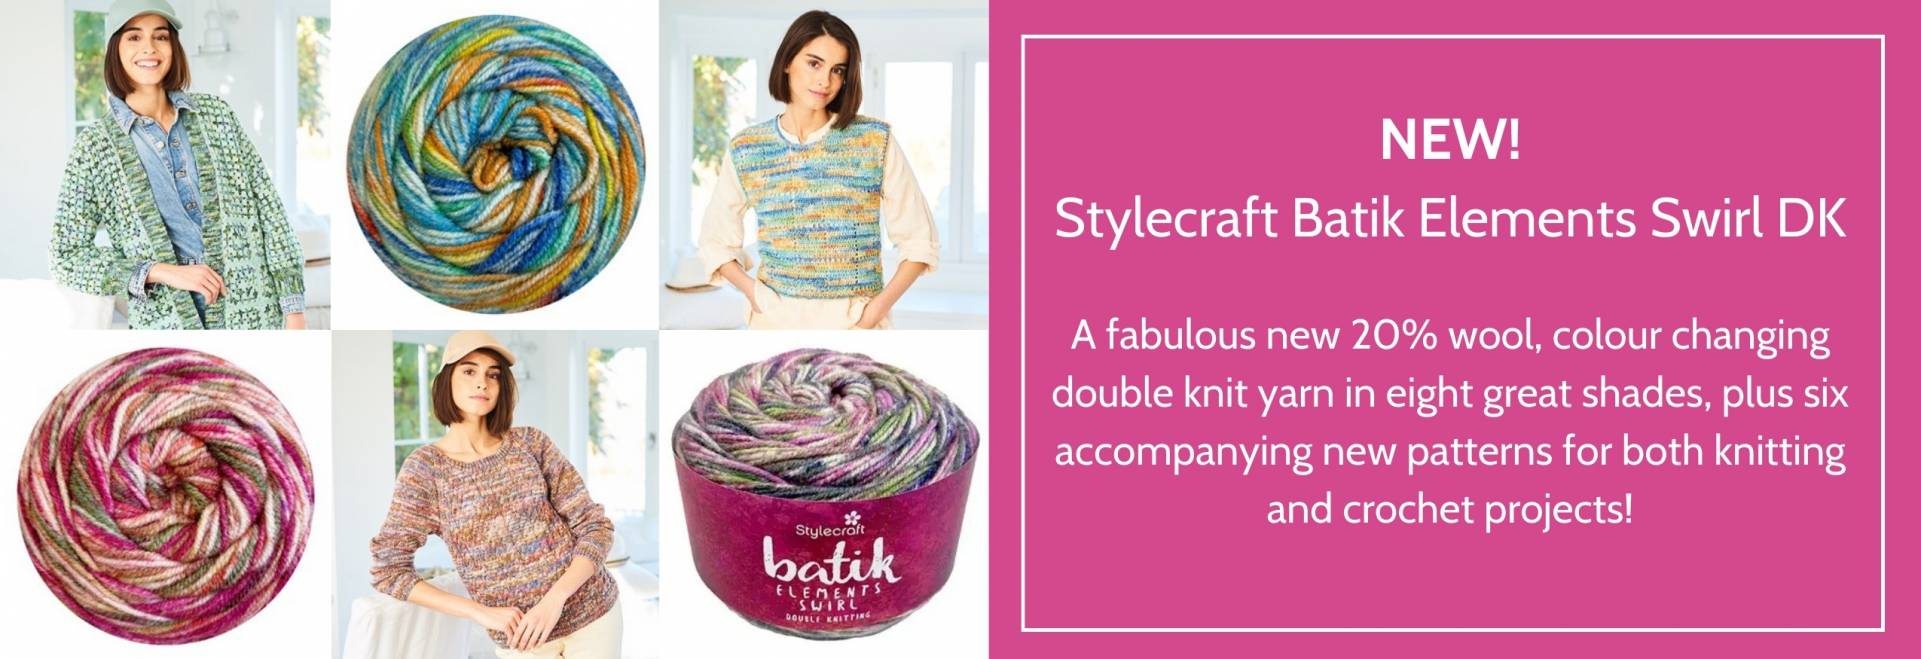 Stylecraft Batik Elements Swirl DK Homepage Banner